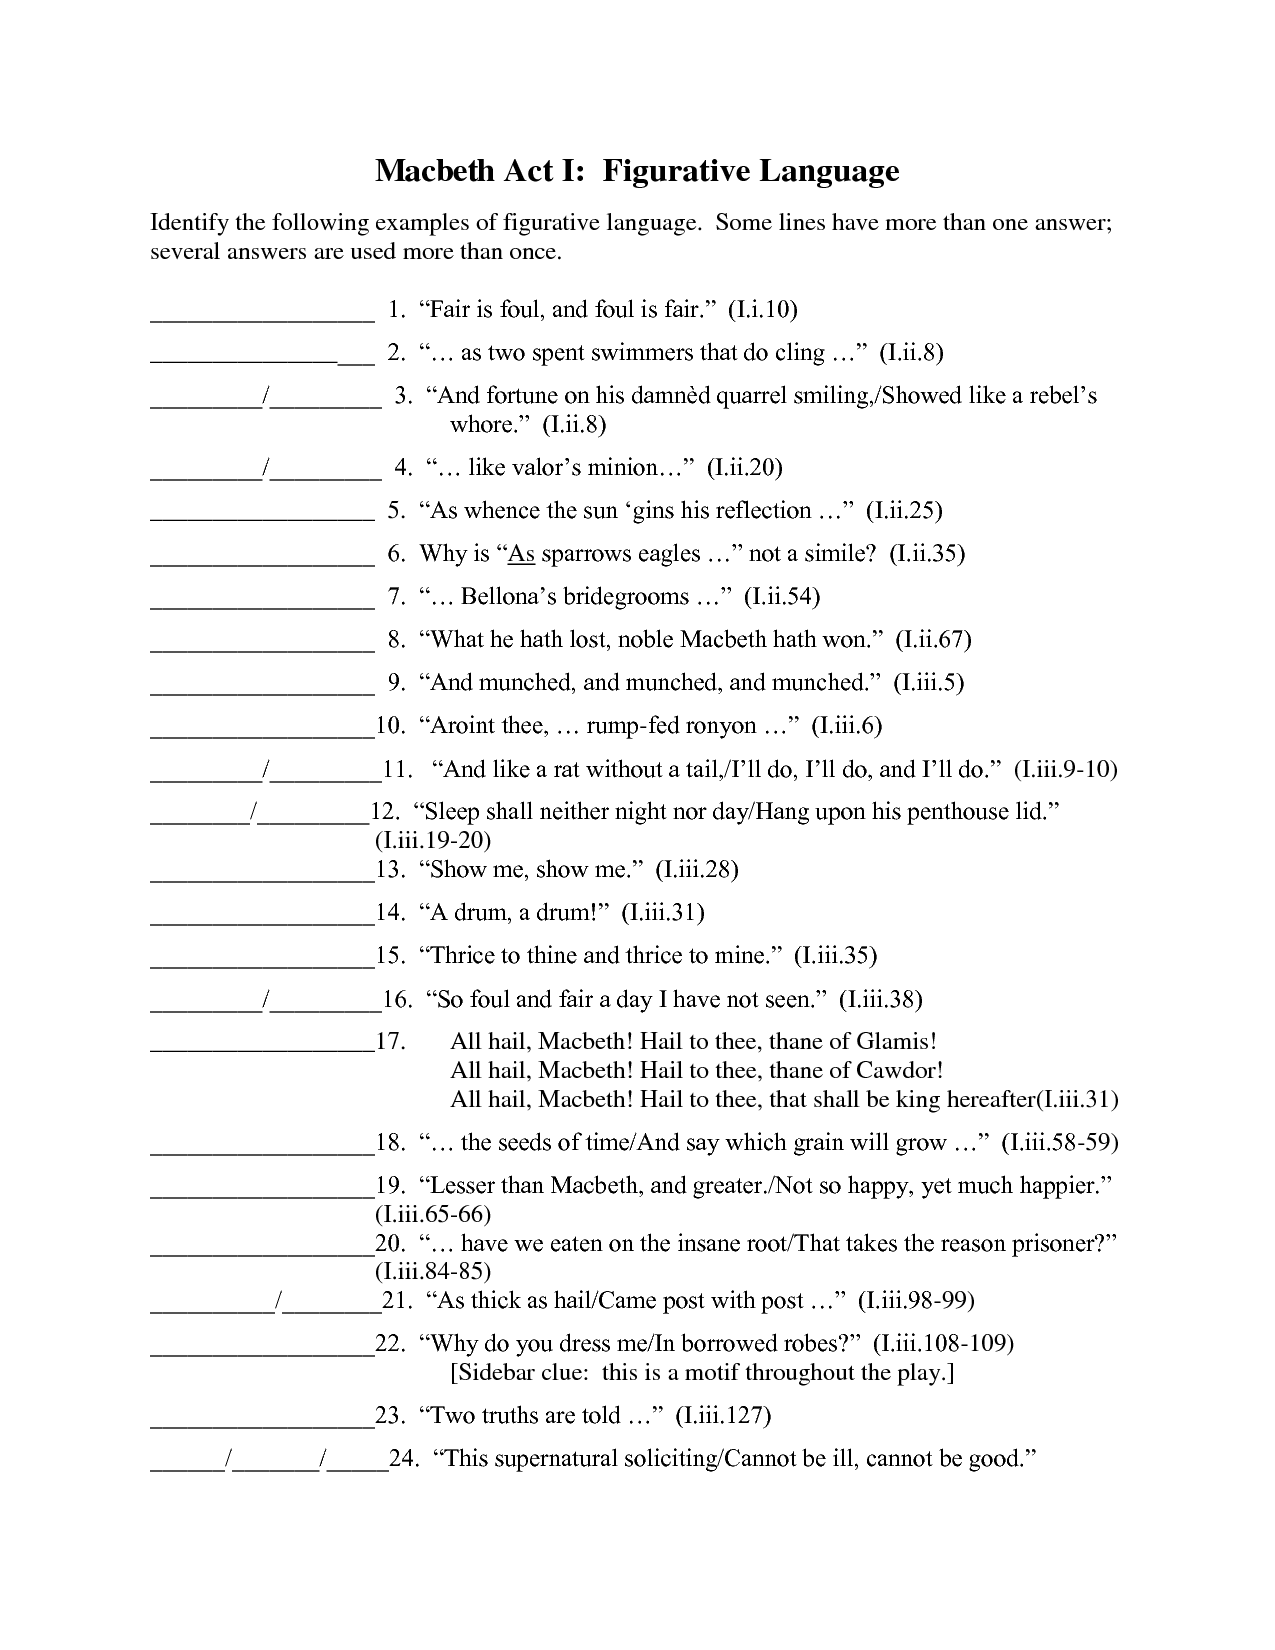 Figurative Language Worksheet Answers Image